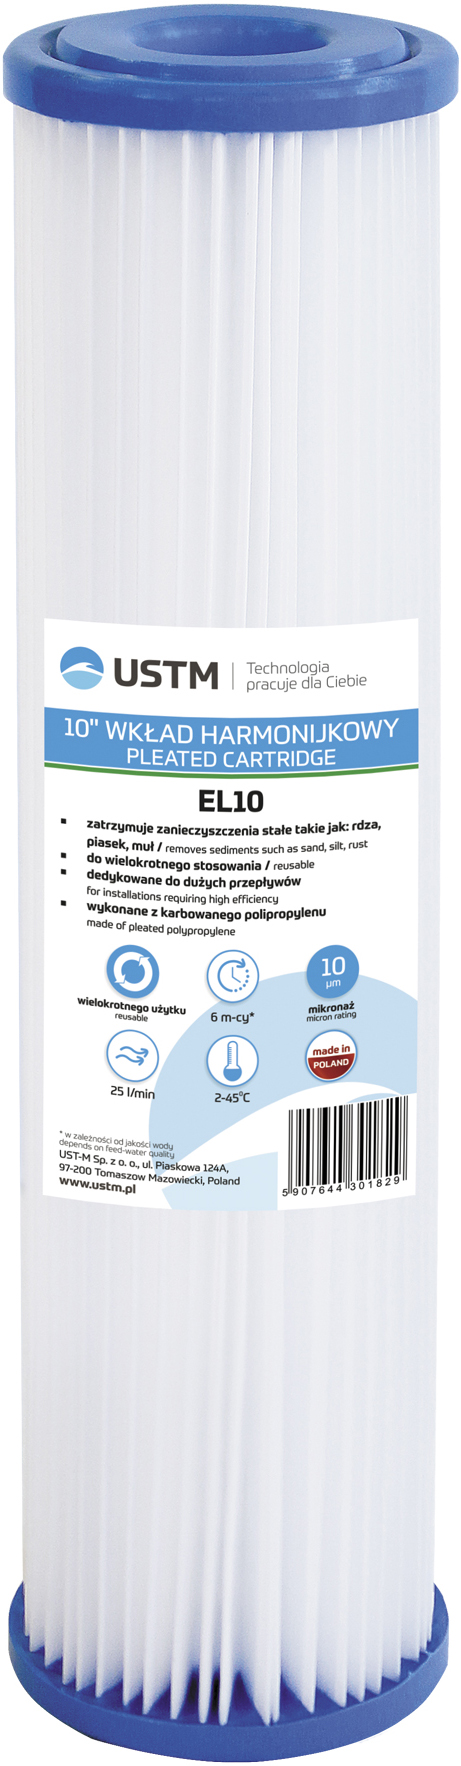 Картридж для фильтра USTM EL10M в интернет-магазине, главное фото